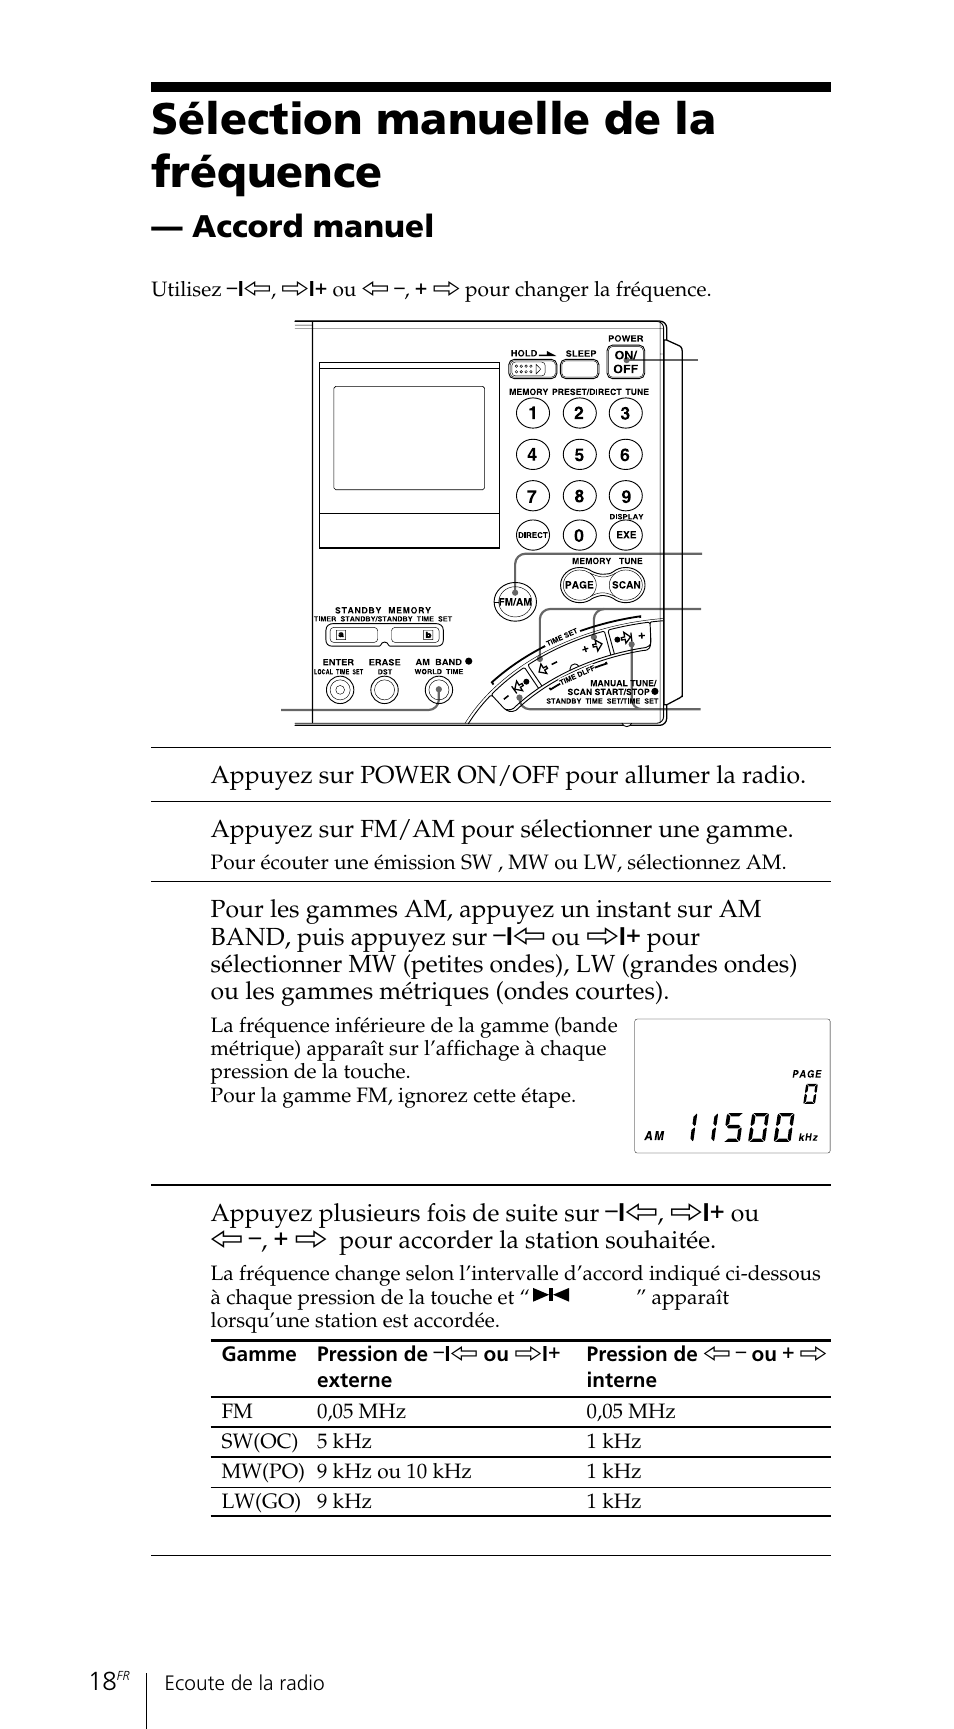 Sélection manuelle de la fréquence, Accord manuel | Sony ICF-SW7600GR User Manual | Page 58 / 242